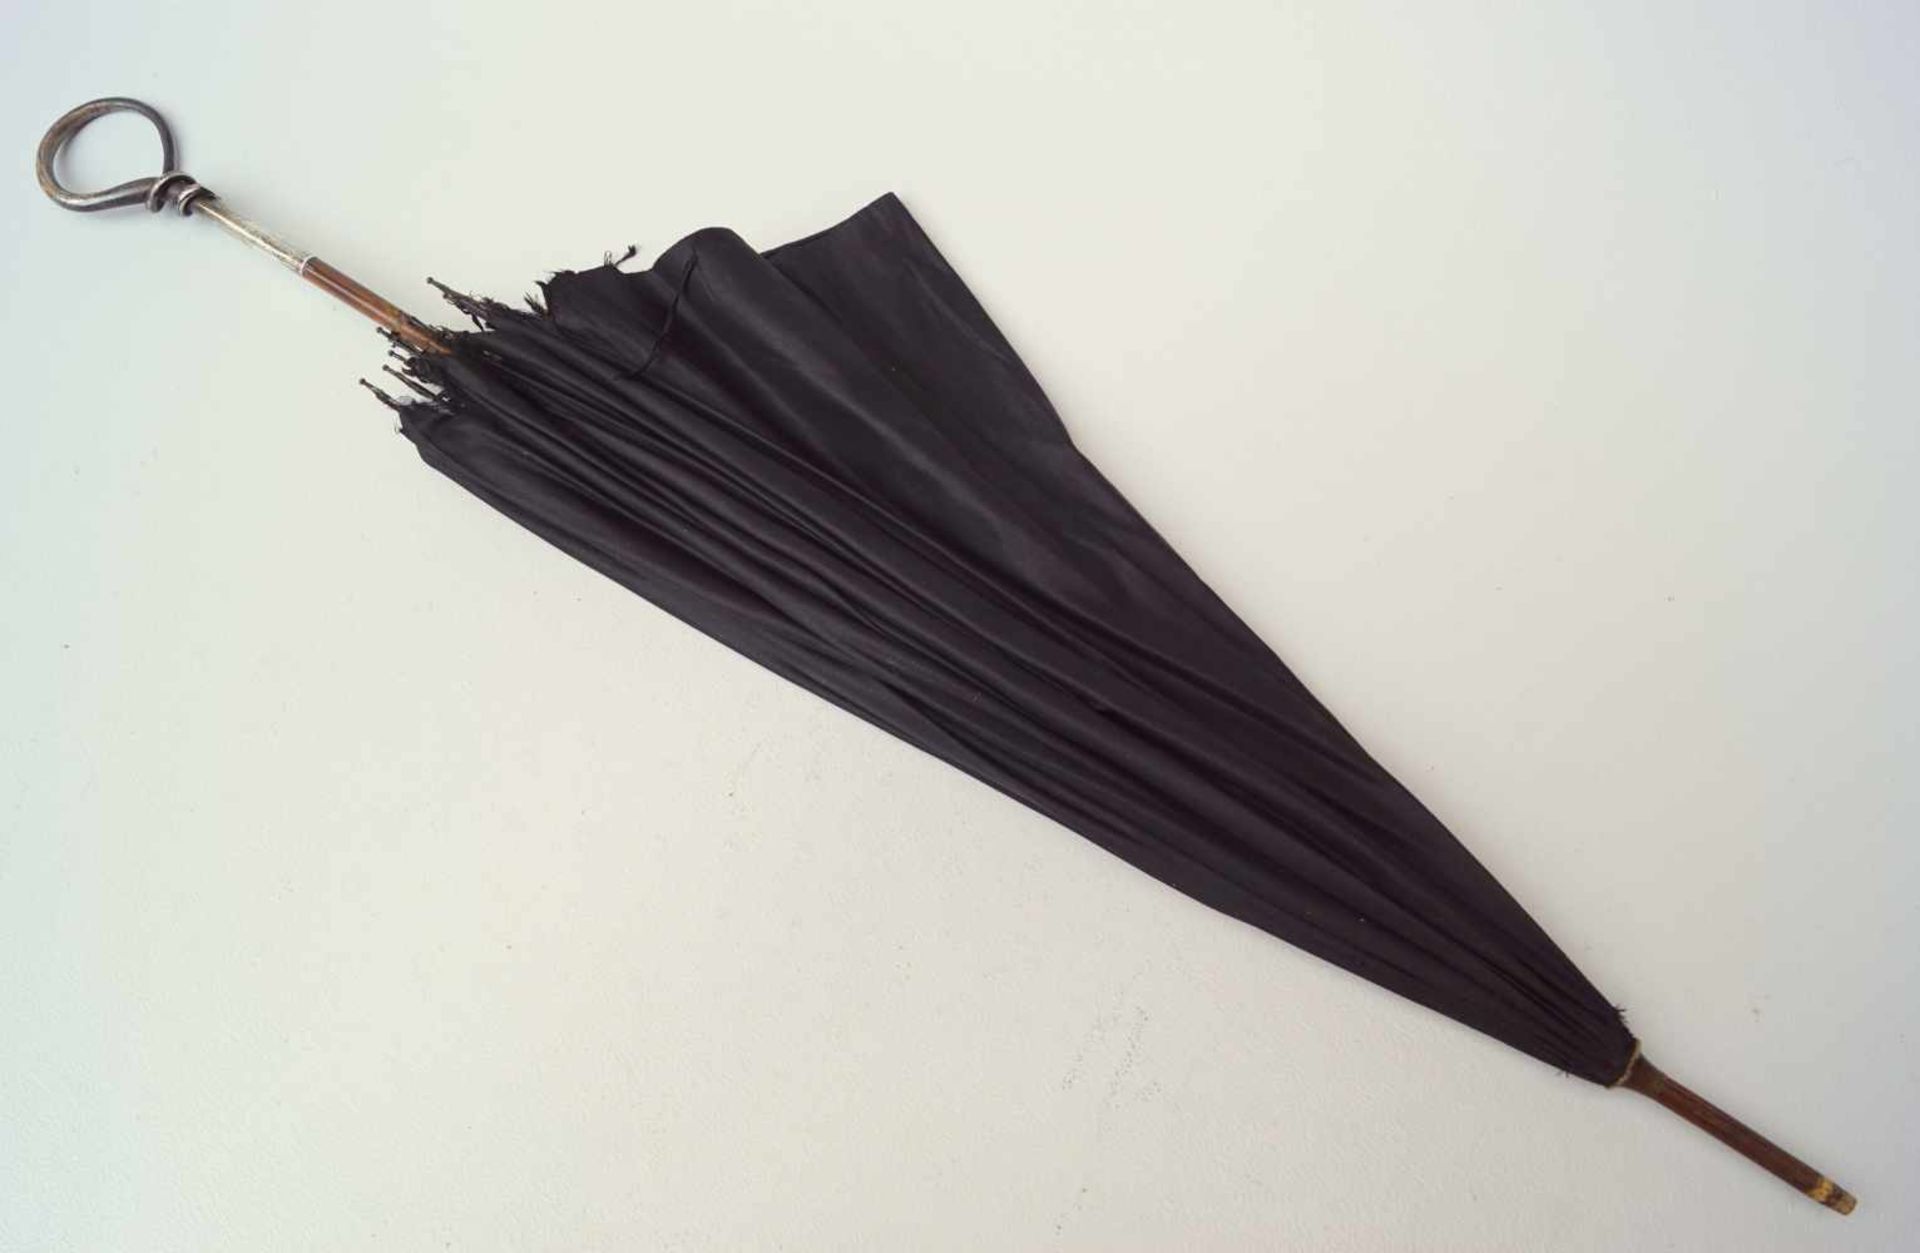 Alter Schirm mit silbernem Griff, deutsch, 1. Hälfte 20. Jhd.Stock aus Holz, Griff aus Silber, - Bild 2 aus 2